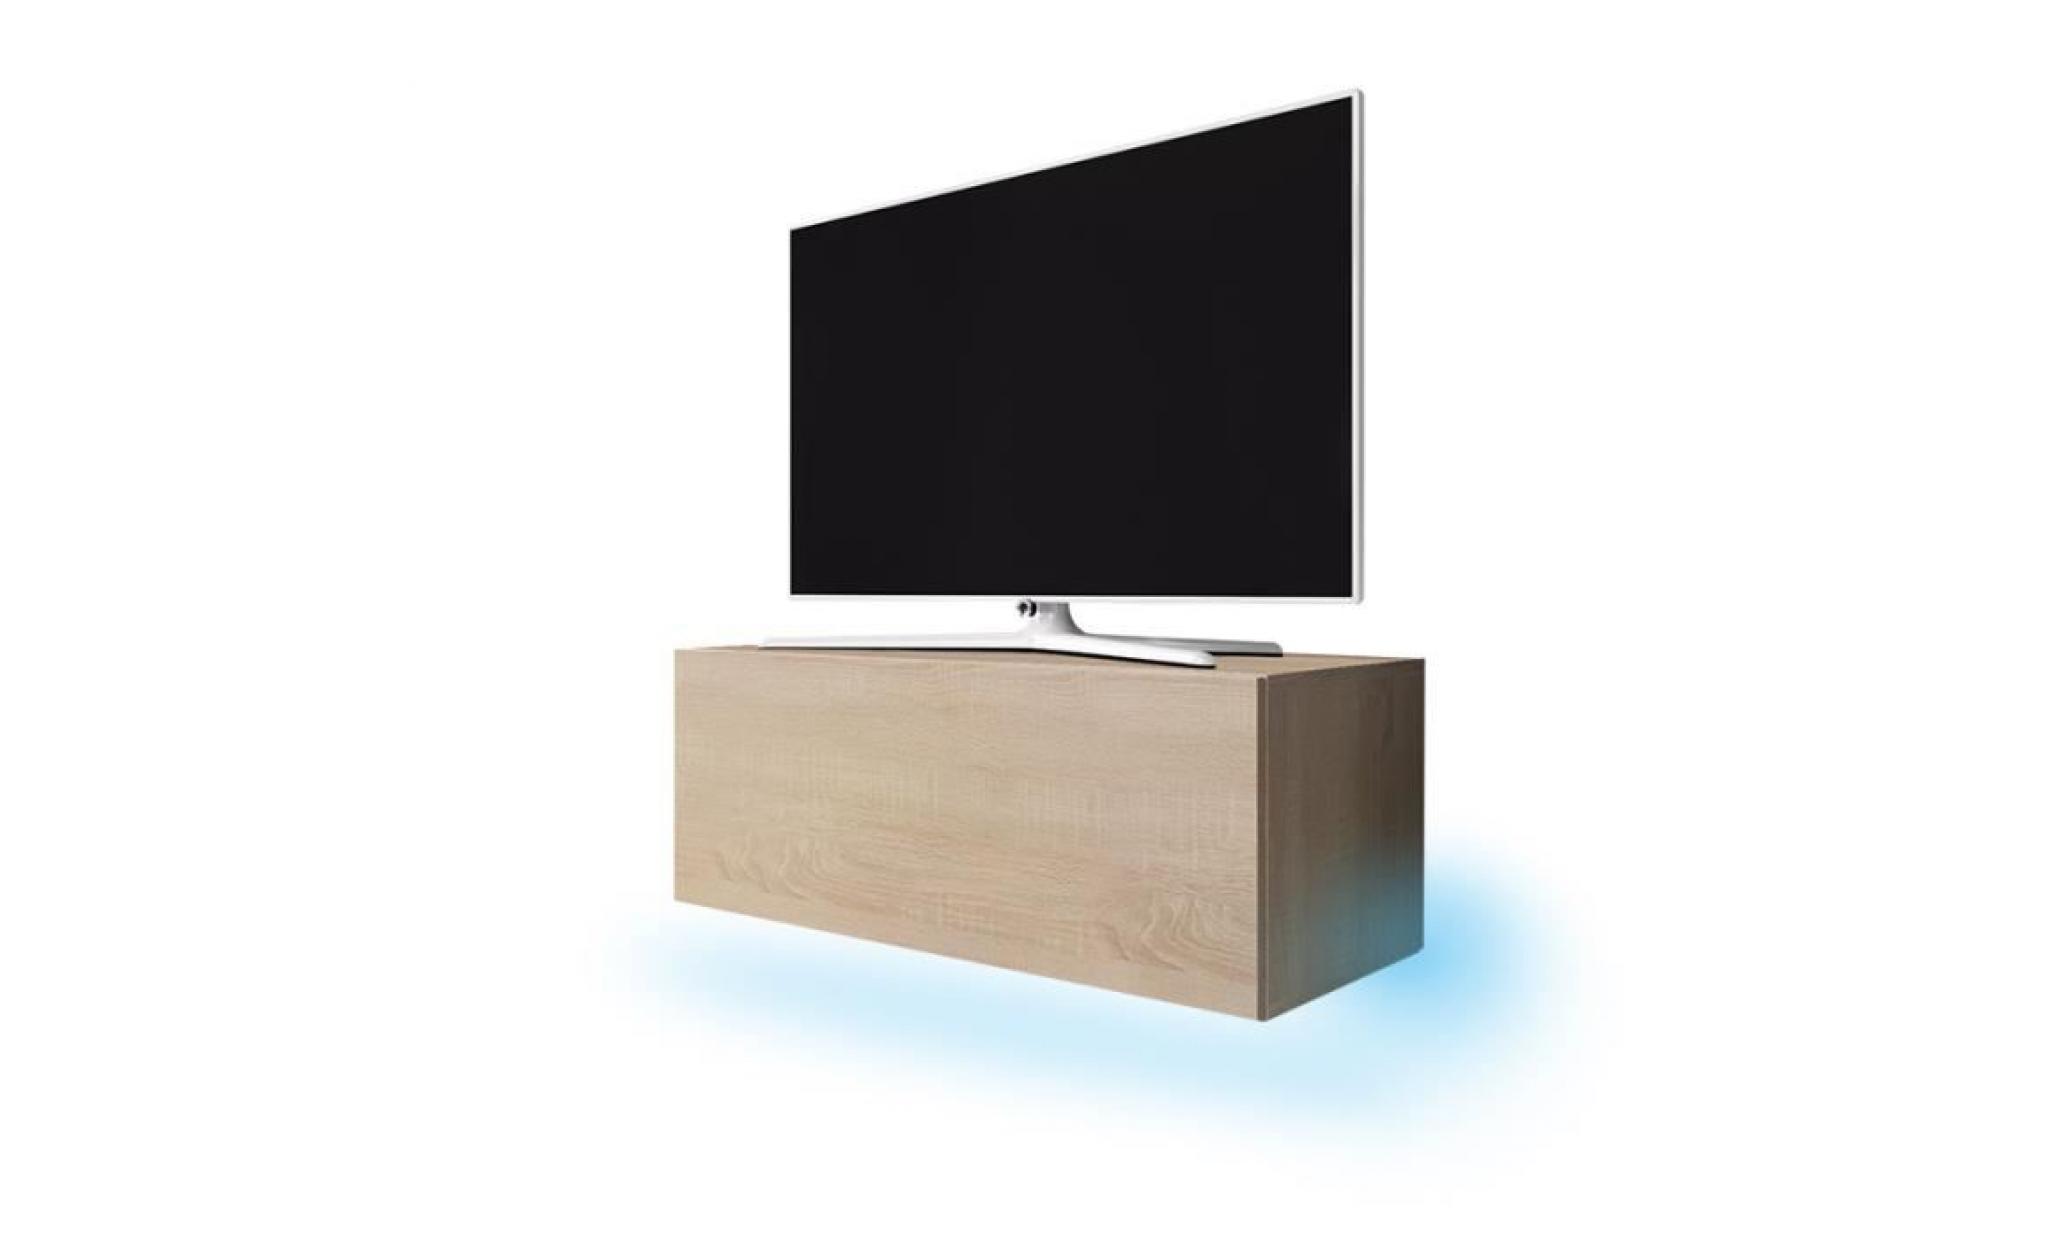 meuble tv / meuble de salon suspendu   lana   100 cm   effet chêne   avec led   style moderne   style classique pas cher